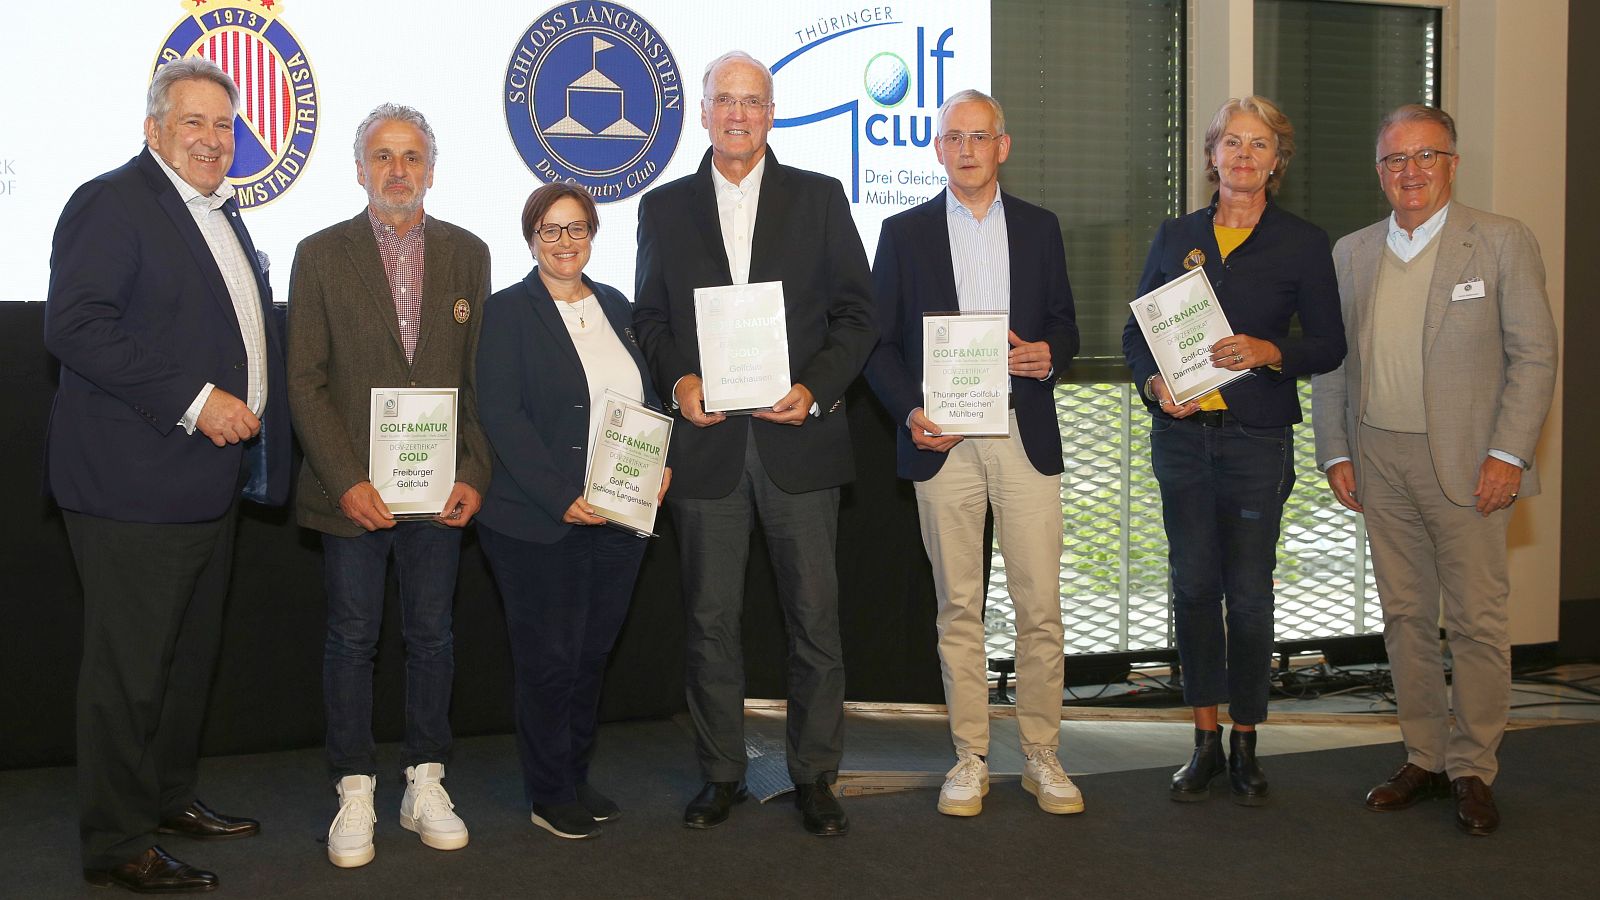 Vertreter aus fünf Clubs nahmen ihre Gold-Zertifikate des Programms Golf & Natur aus den Händen von DGV-Präsident Claus M. Kobold und Stellvertreter Achim Battermann entgegen.